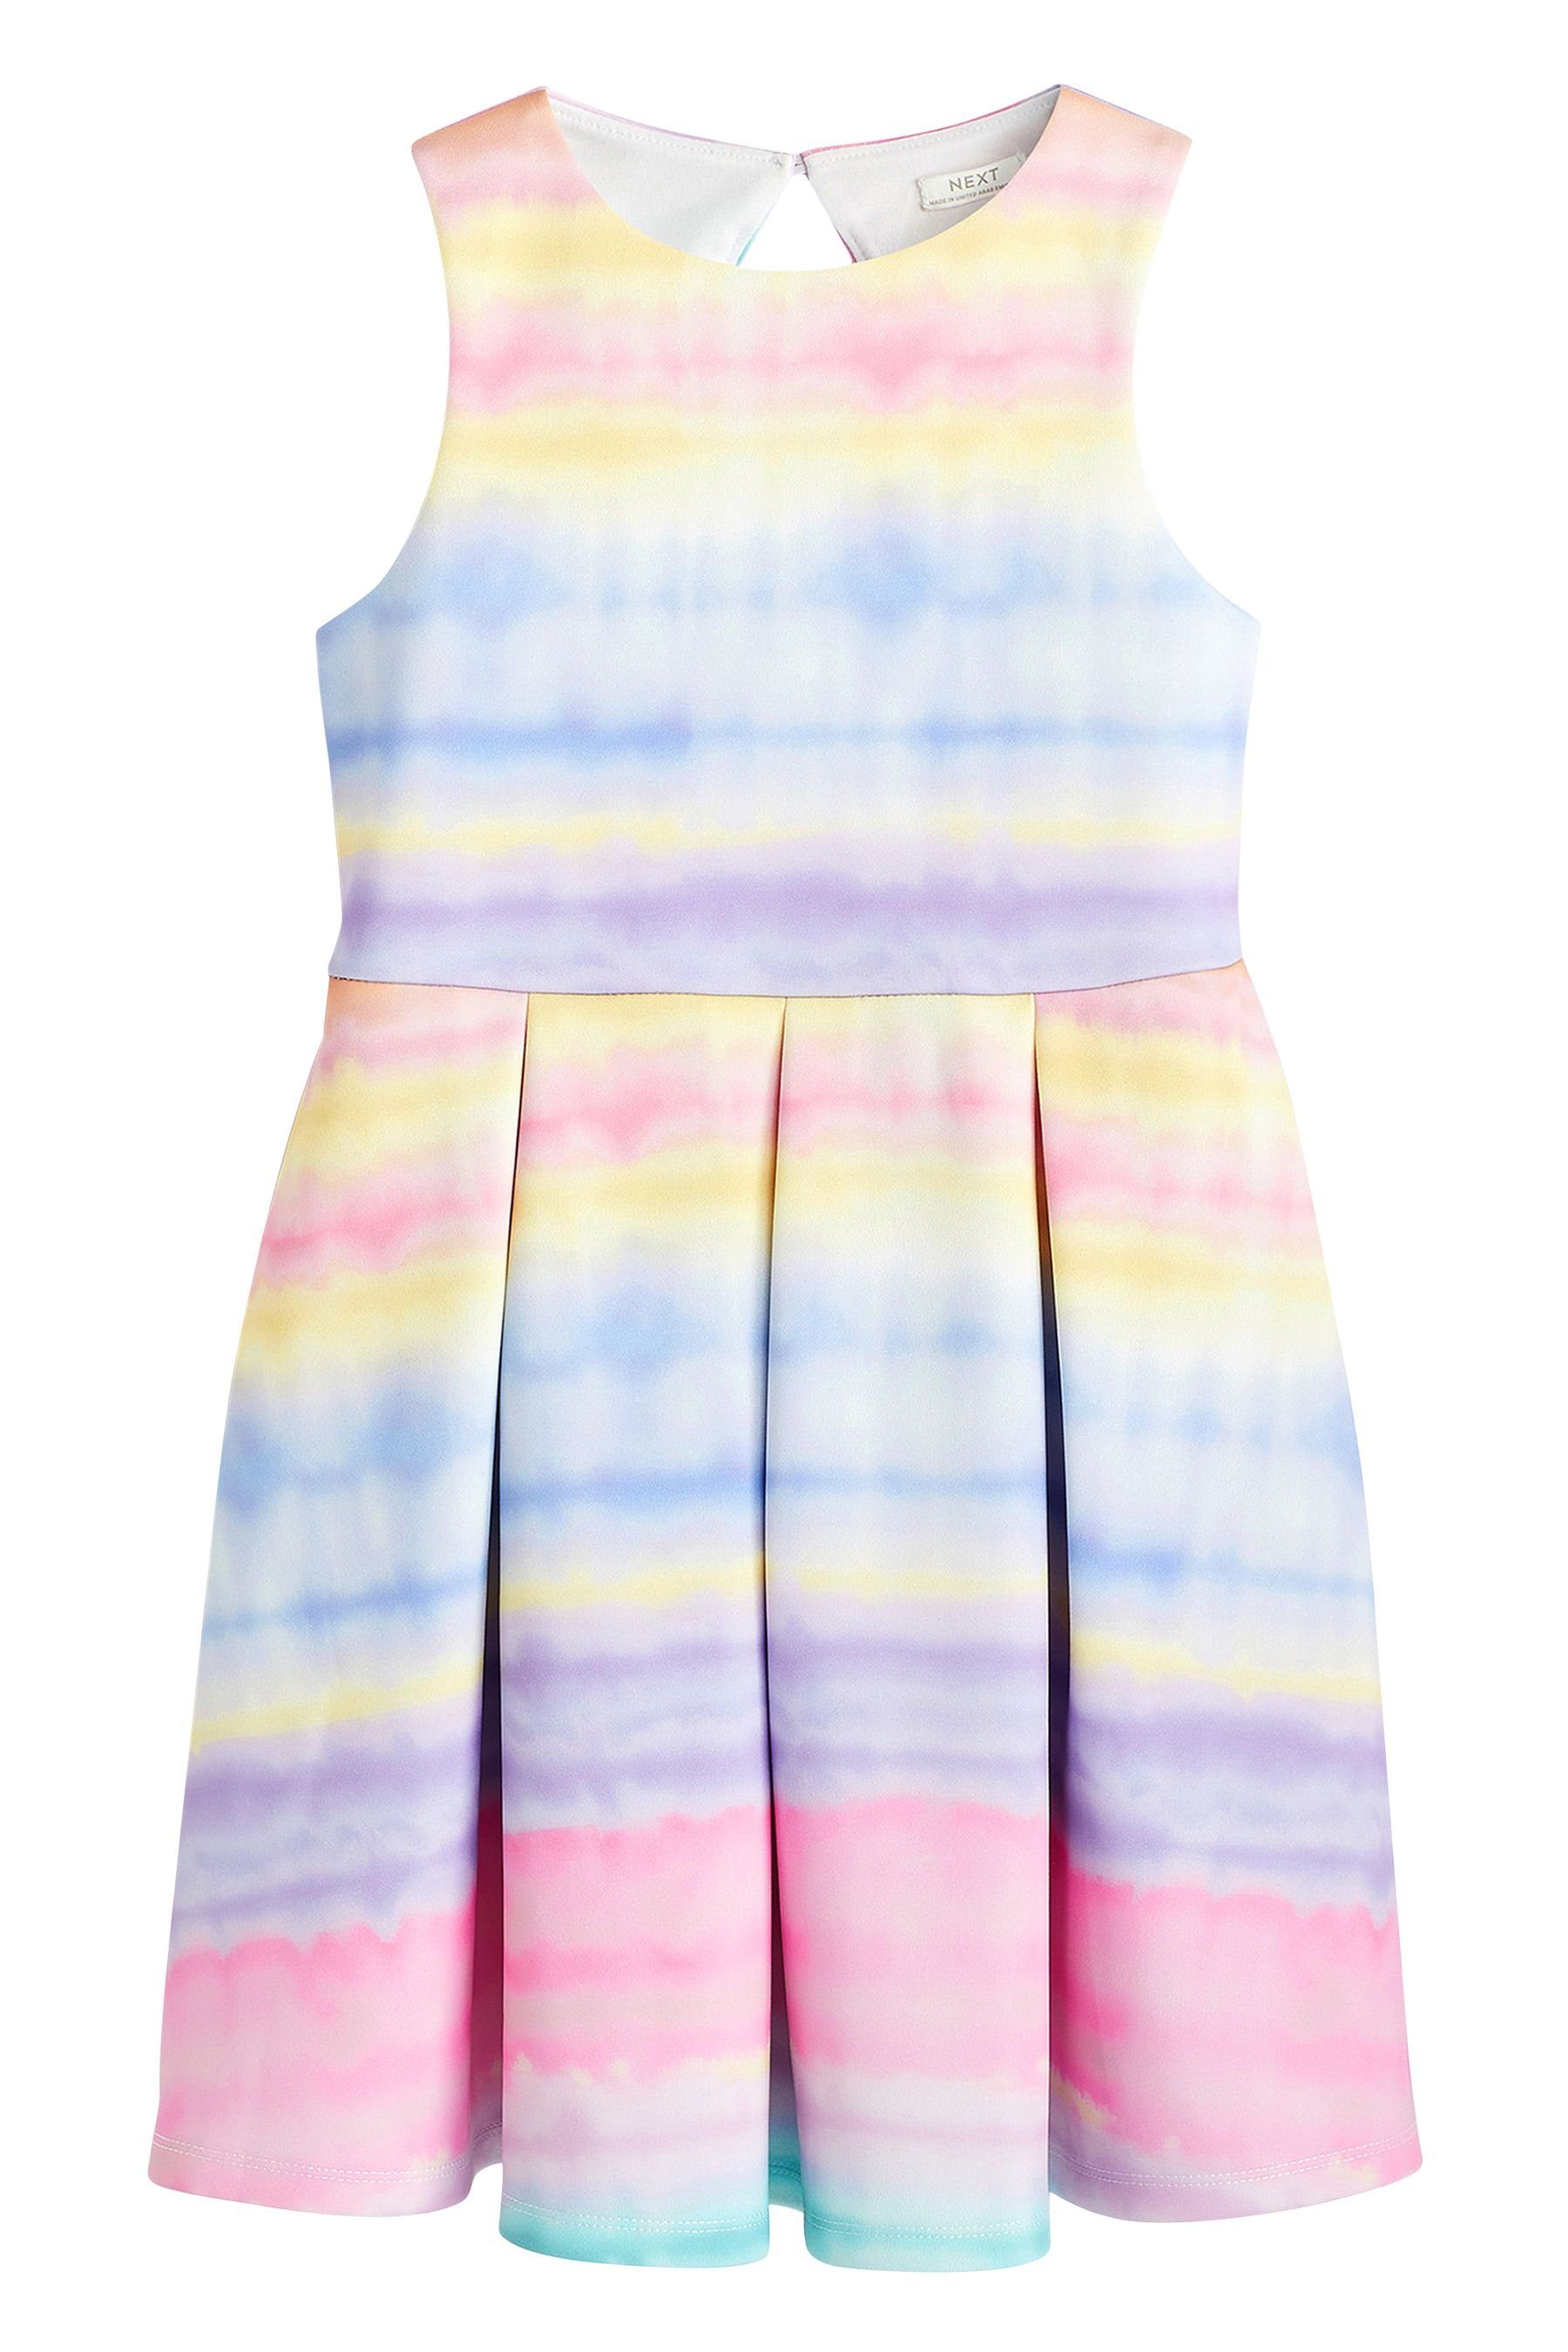 Next Partykleid Tie Dye Festliches (1-tlg) Kleid Multi Stripe Pink/Blue/Orange